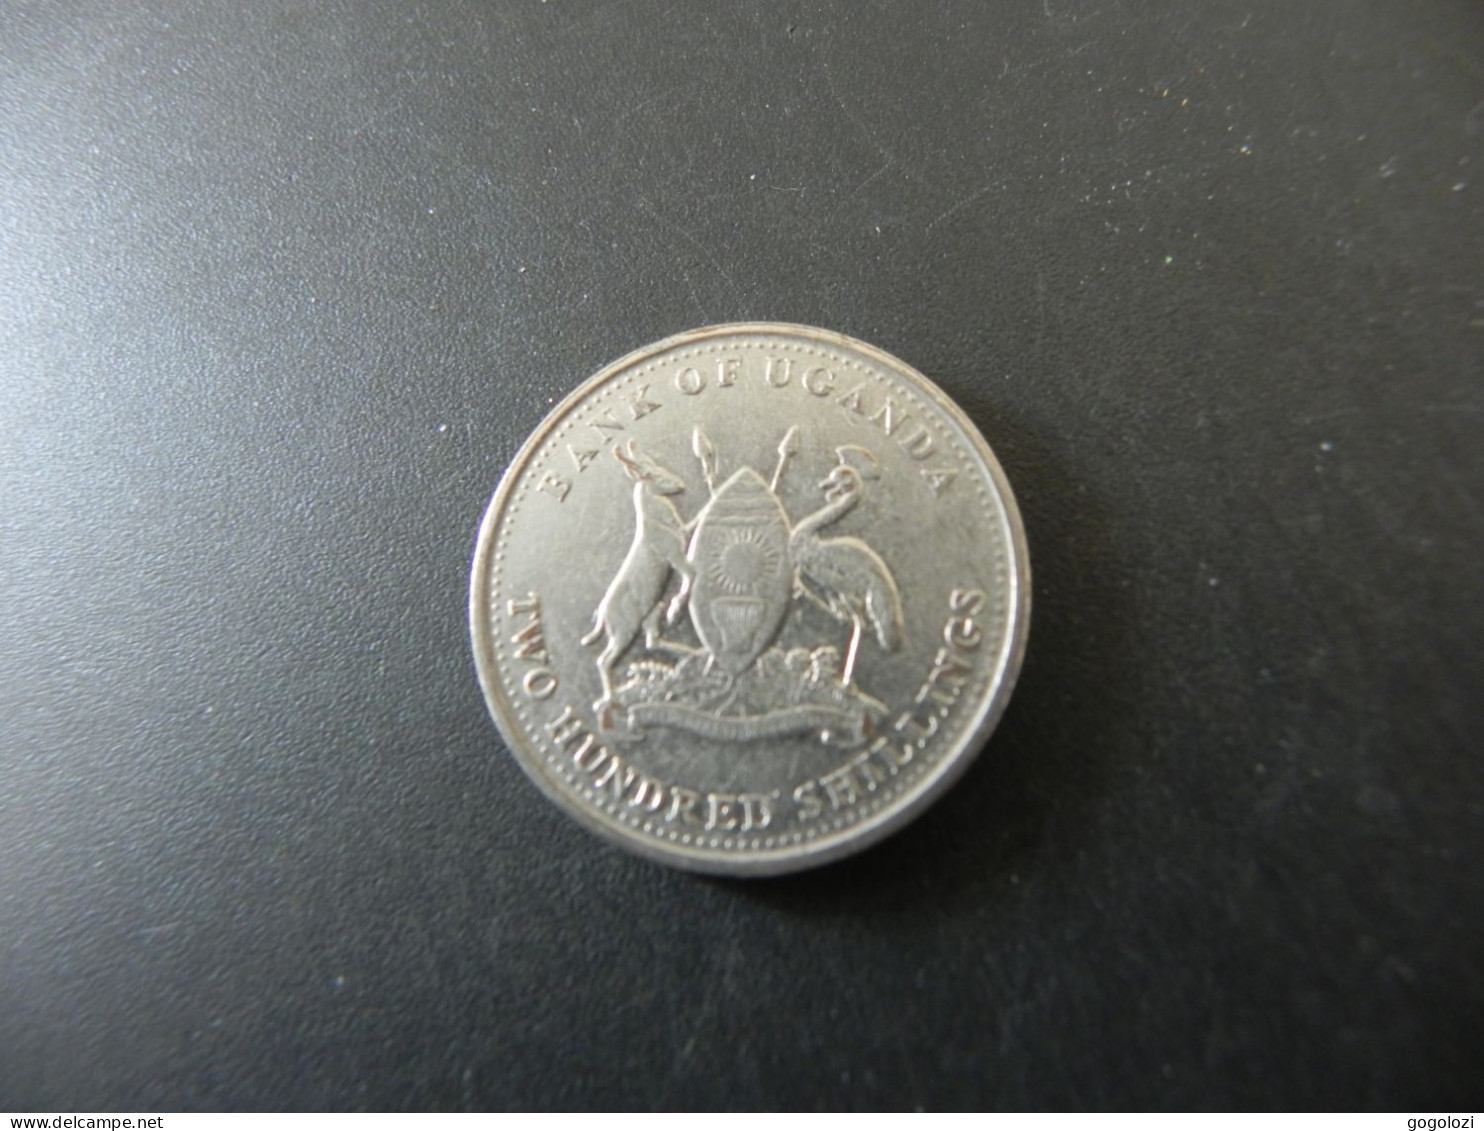 Uganda 200 Shillings 2007 - Uganda